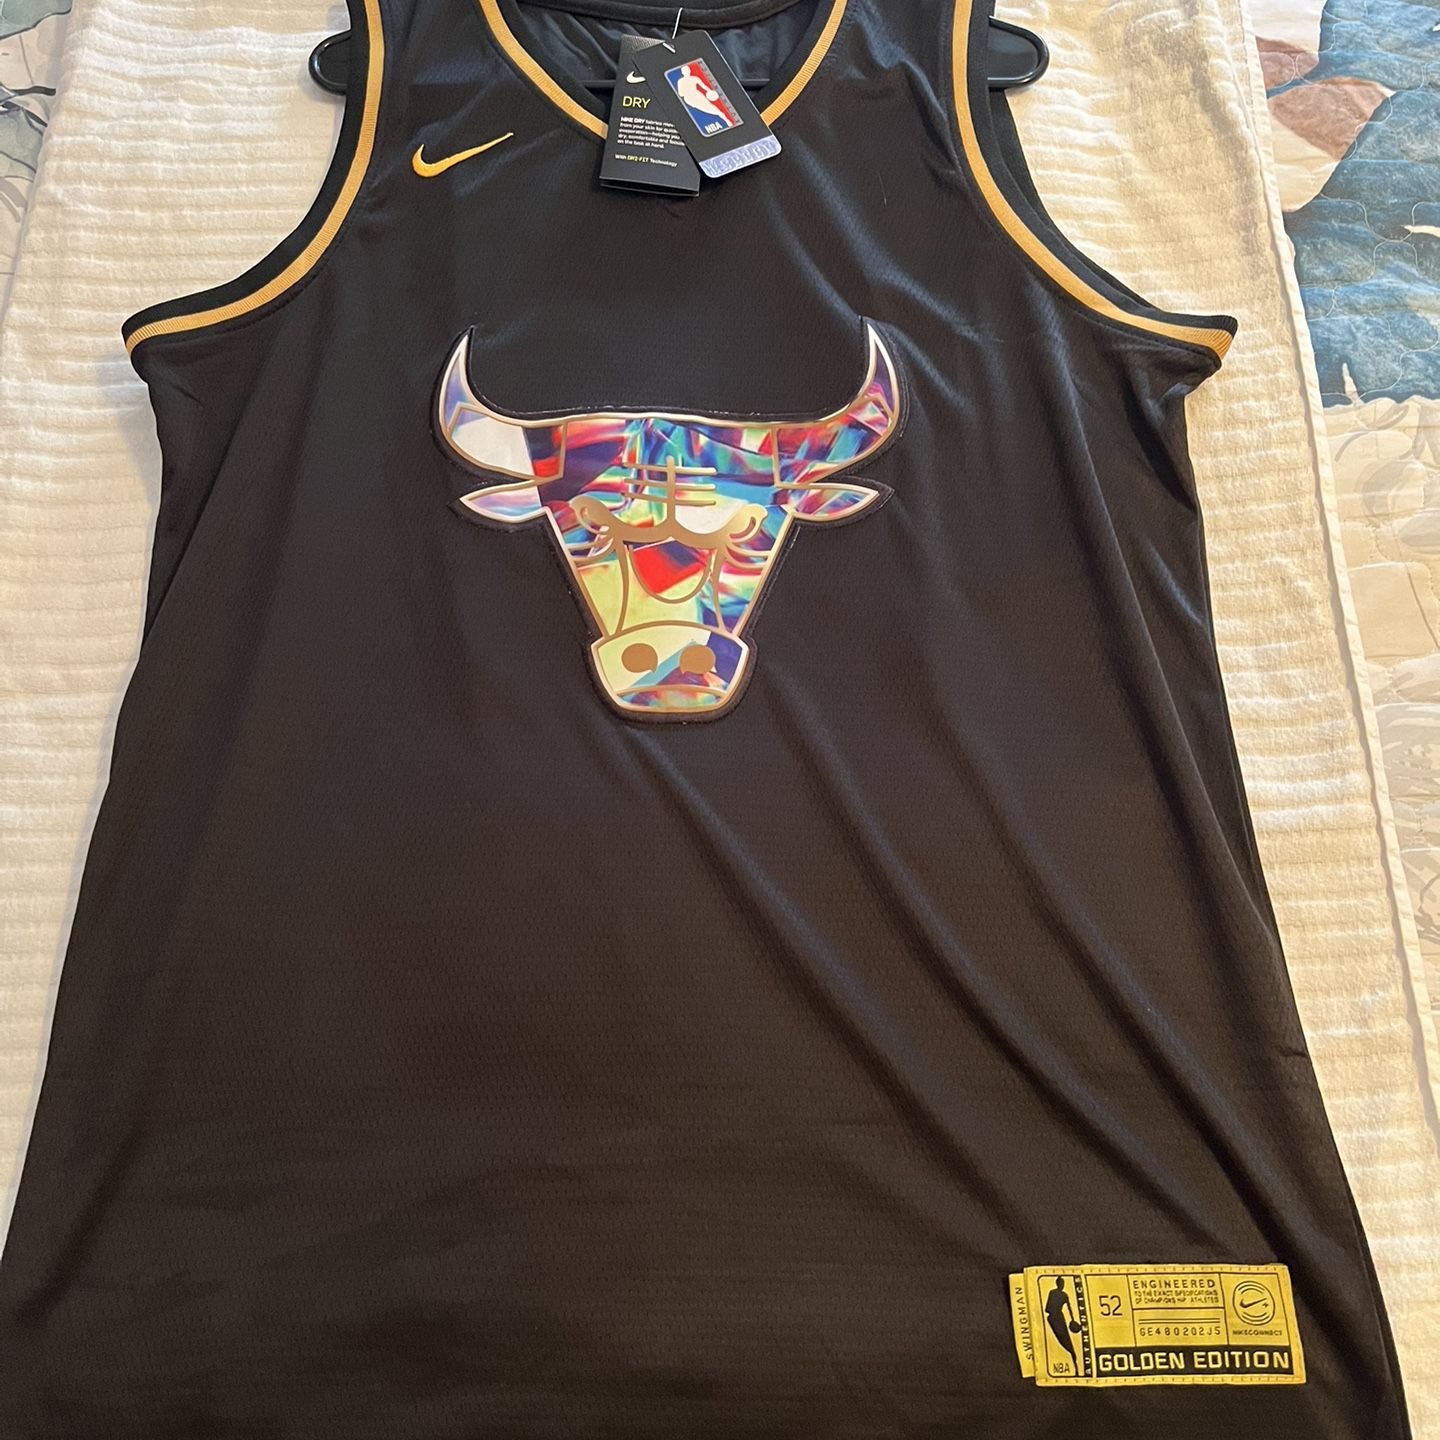 Nike - Custom Bulls Jersey